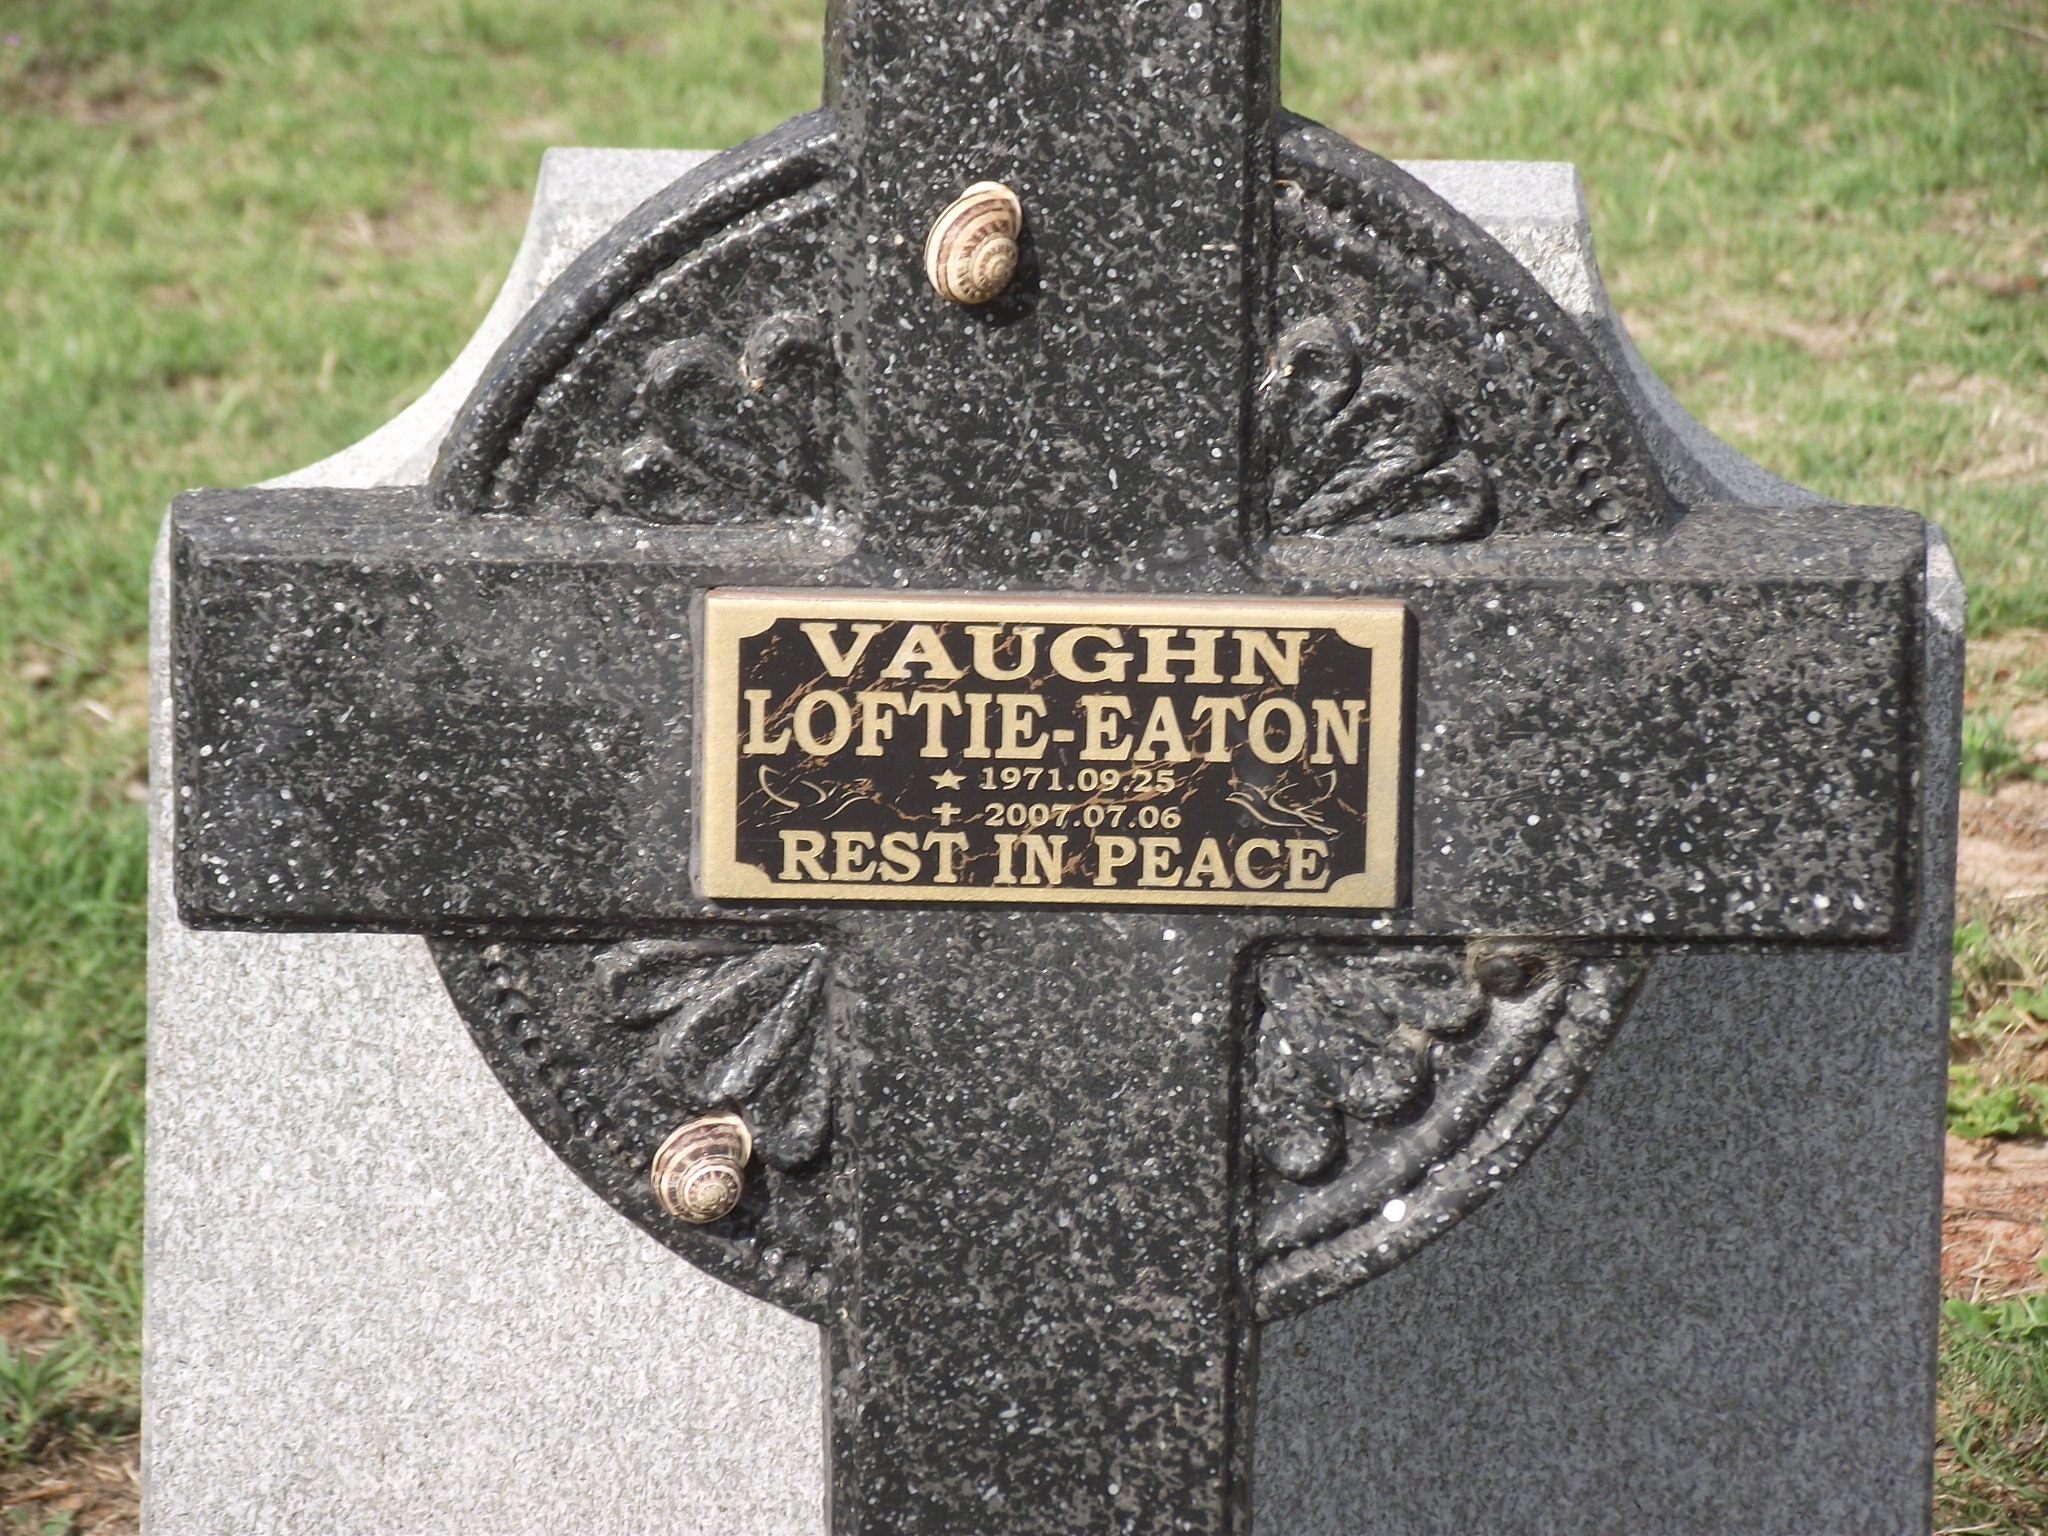 LOFTIE-EATON Vaughn 1971-2007